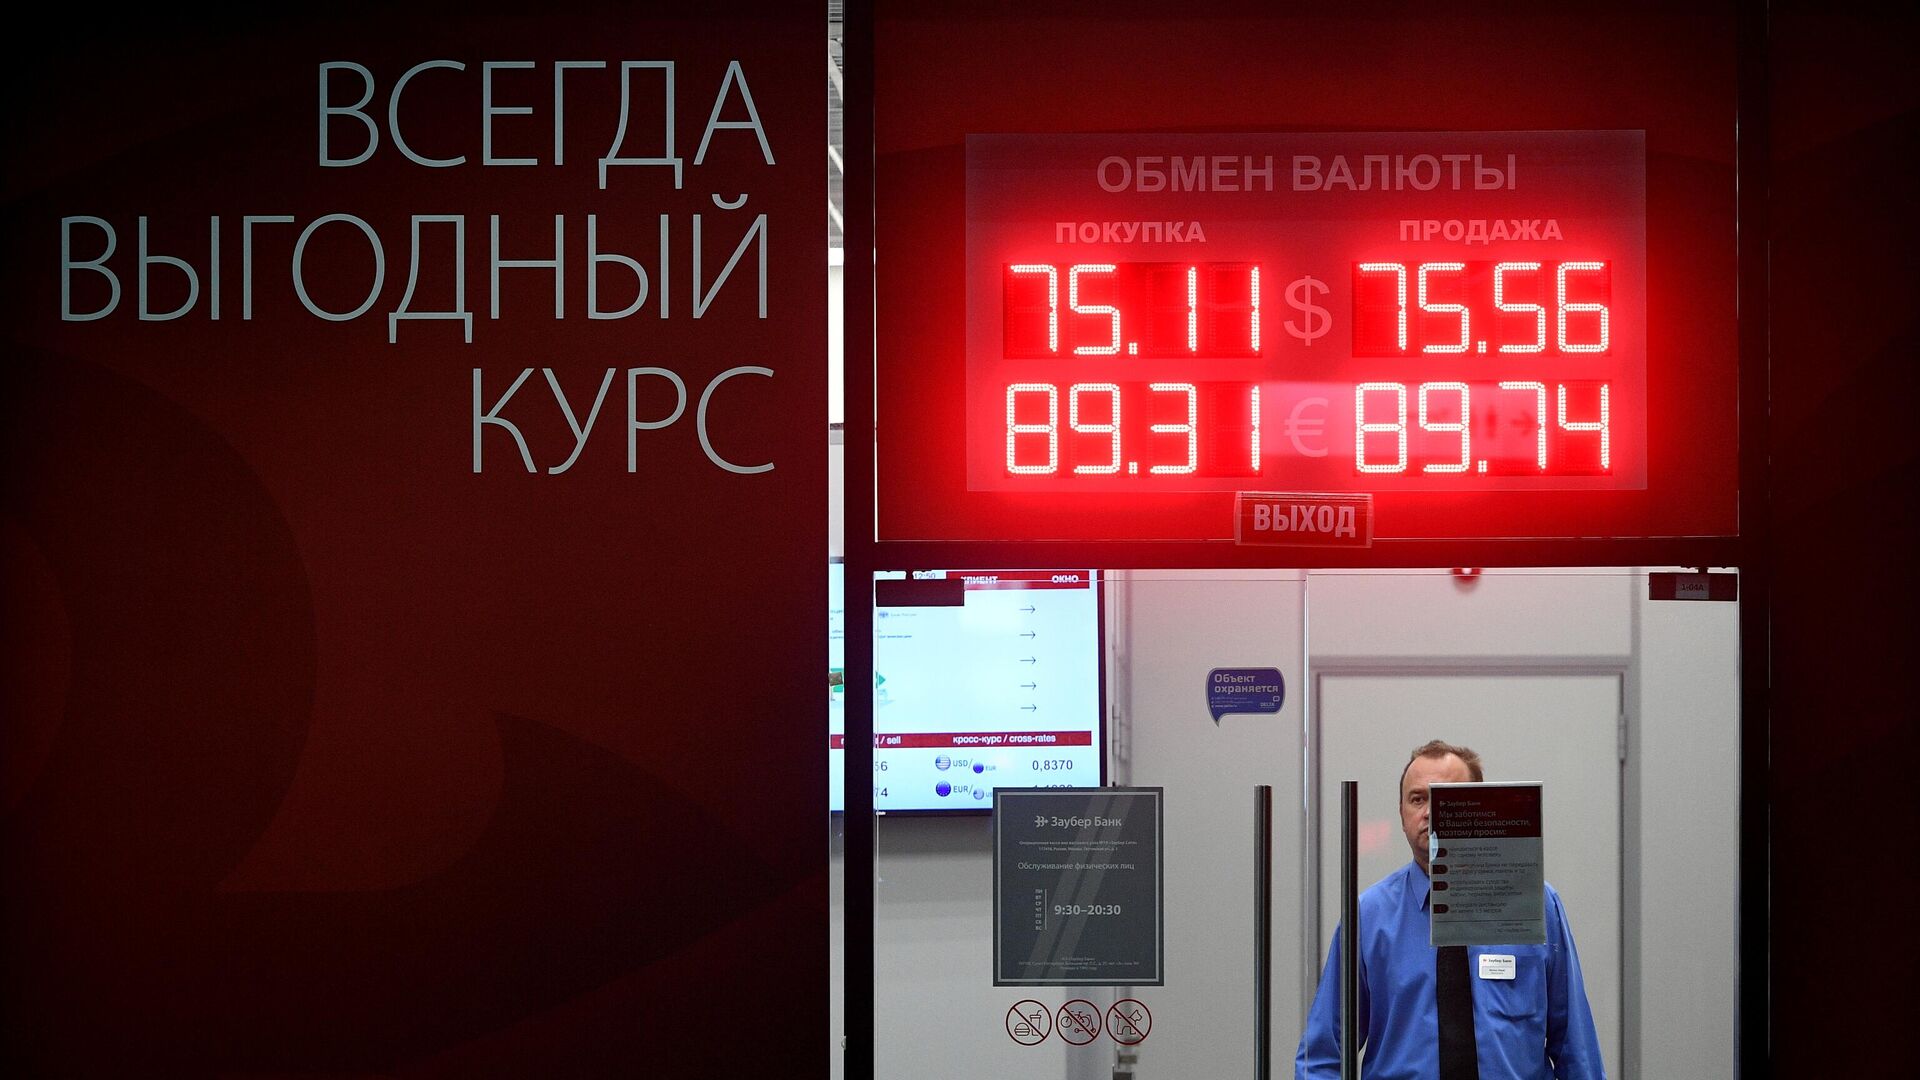 Обмен валюты в тушино выгодный курс рбк курс обмена валюты в москве